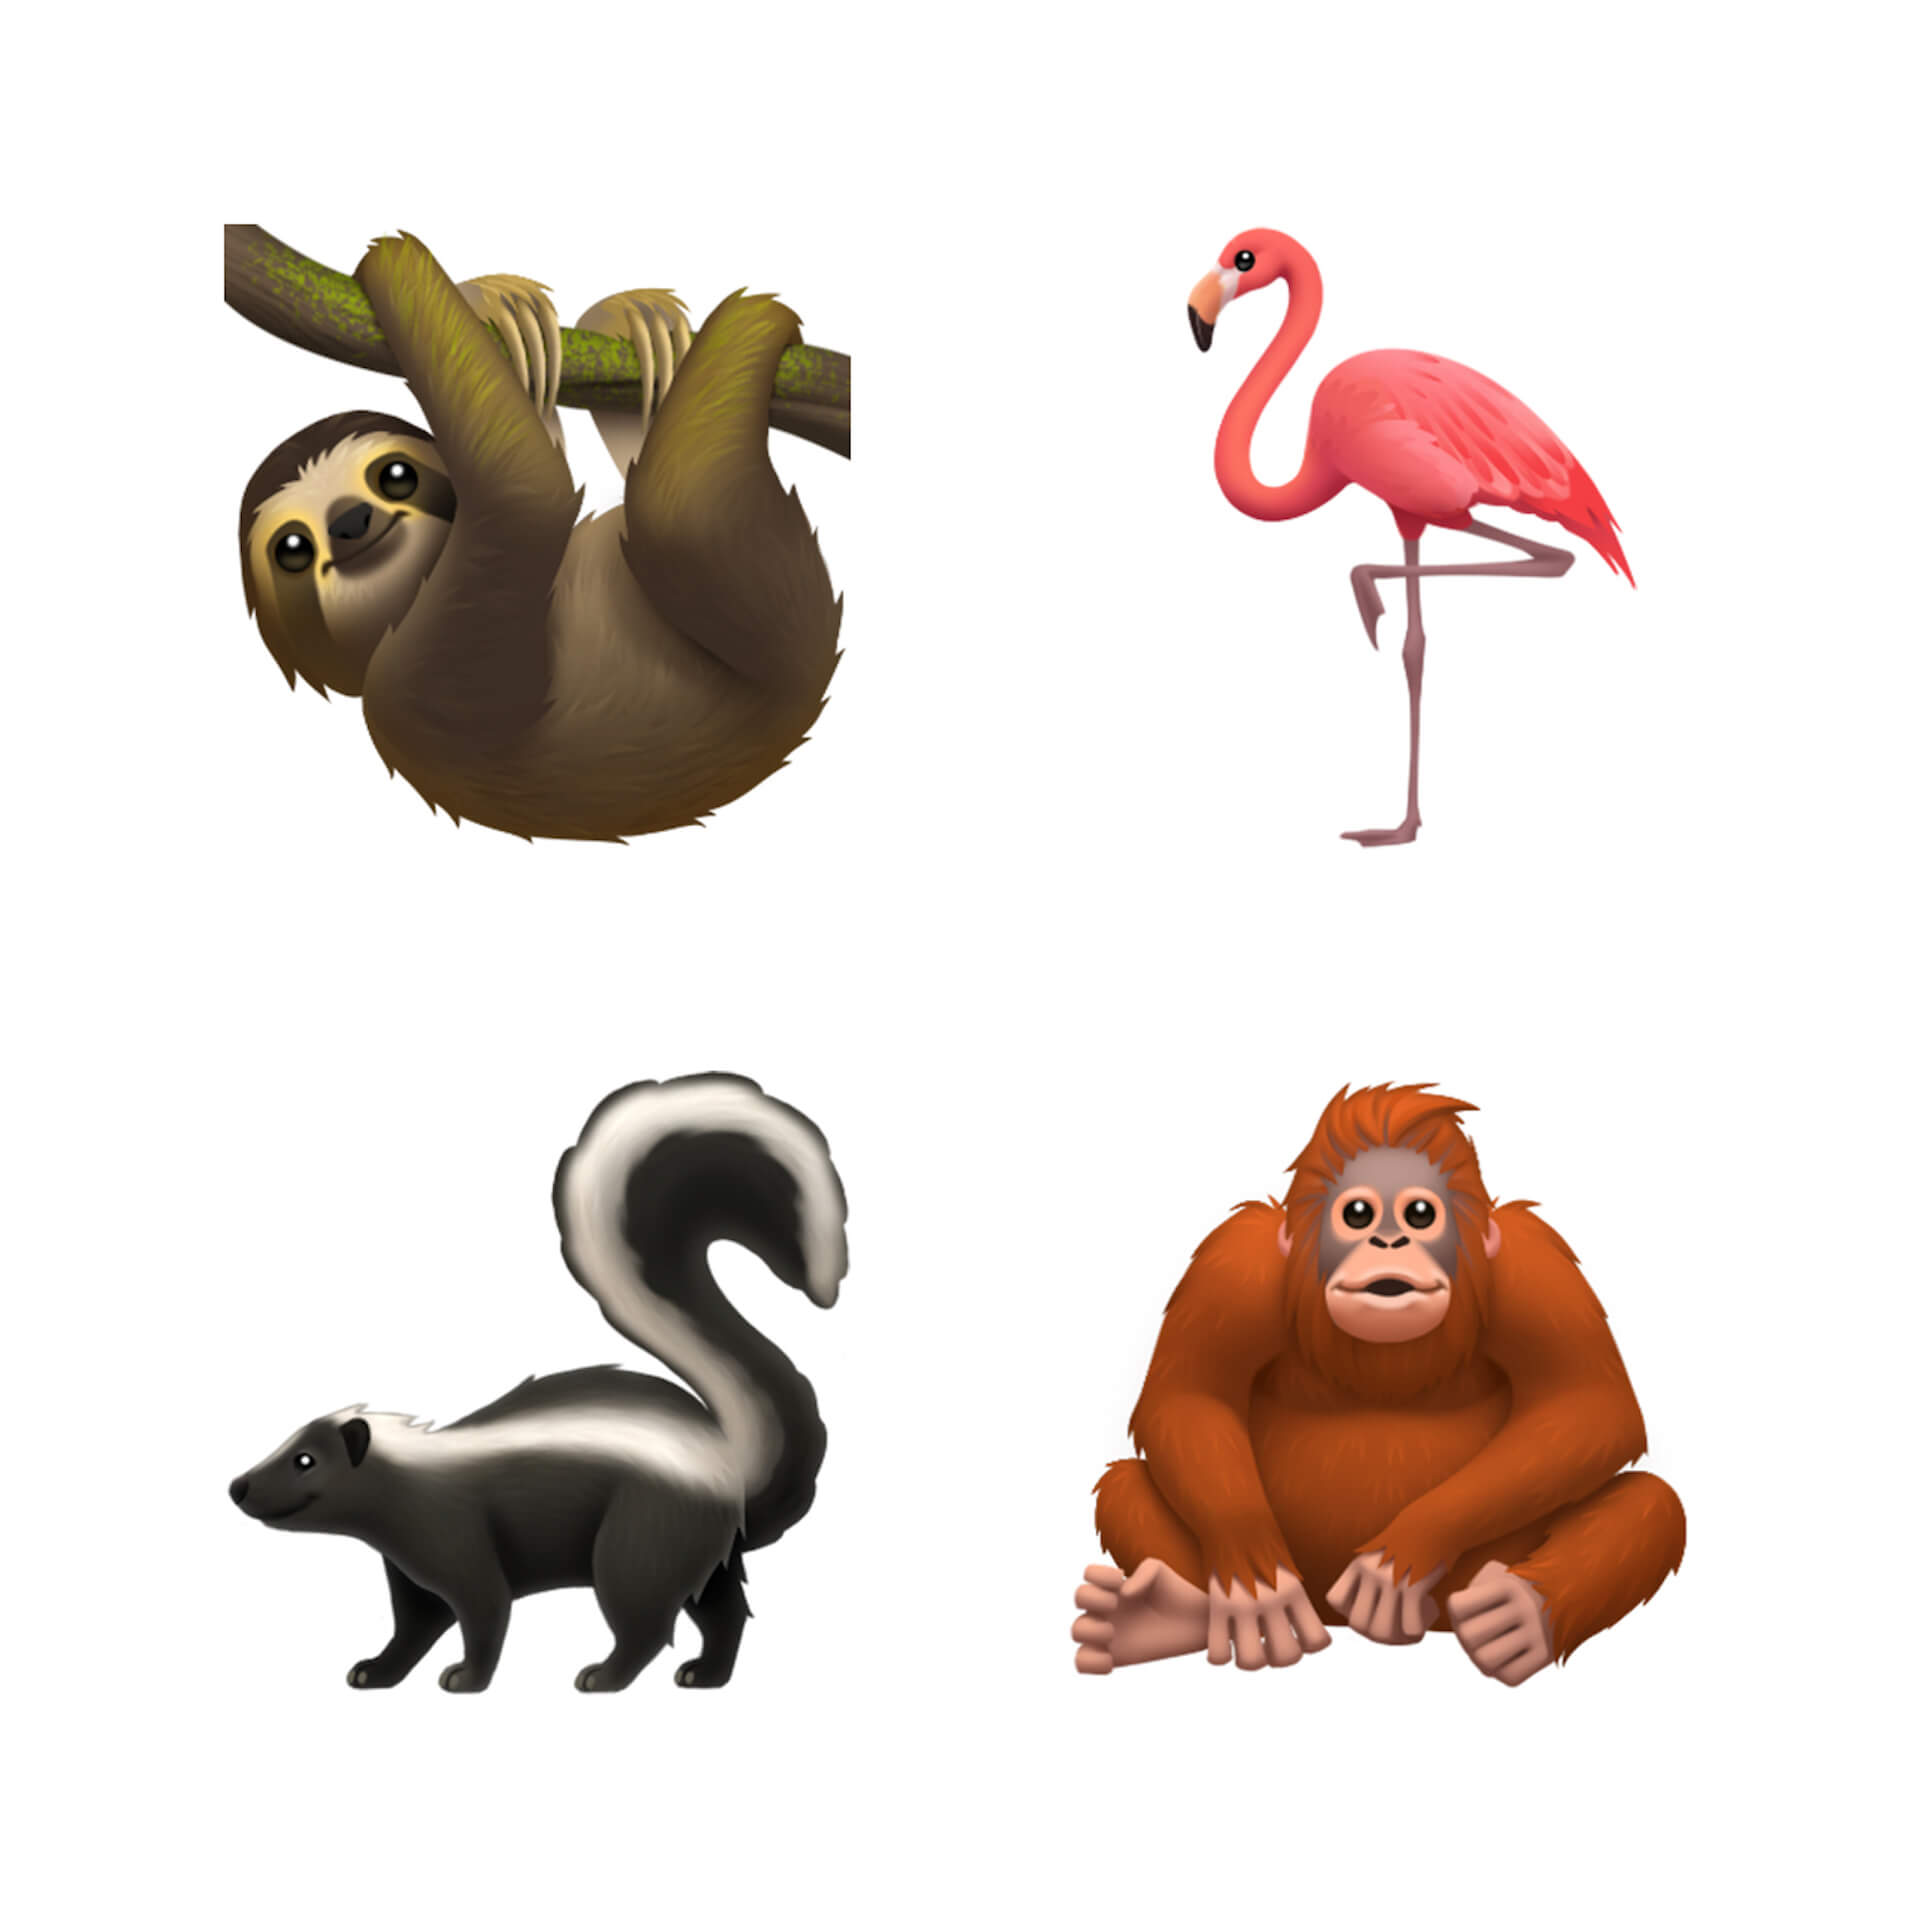 キュートな動物たちから多様性を奨励する絵文字まで Apple Ios 13 に追加予定の絵文字の一部が公開に Qetic